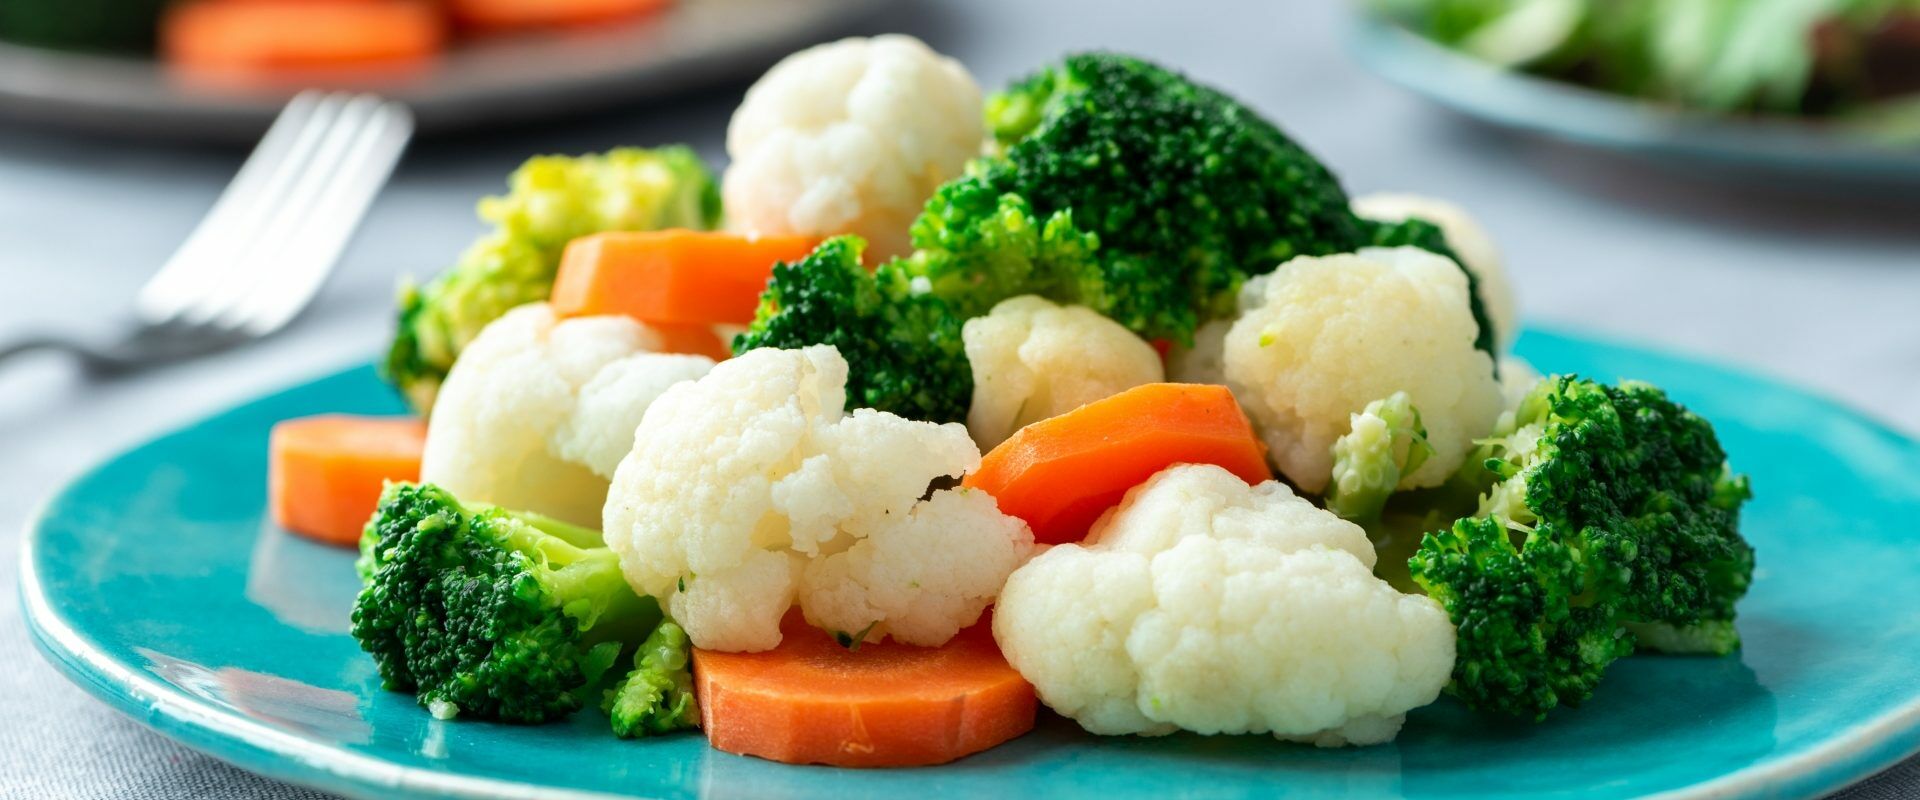 Warzywa gotowane na parze: marchewka, kalafior, brokuł na niebieskim talerzu - dieta przeciwgrzybicza.